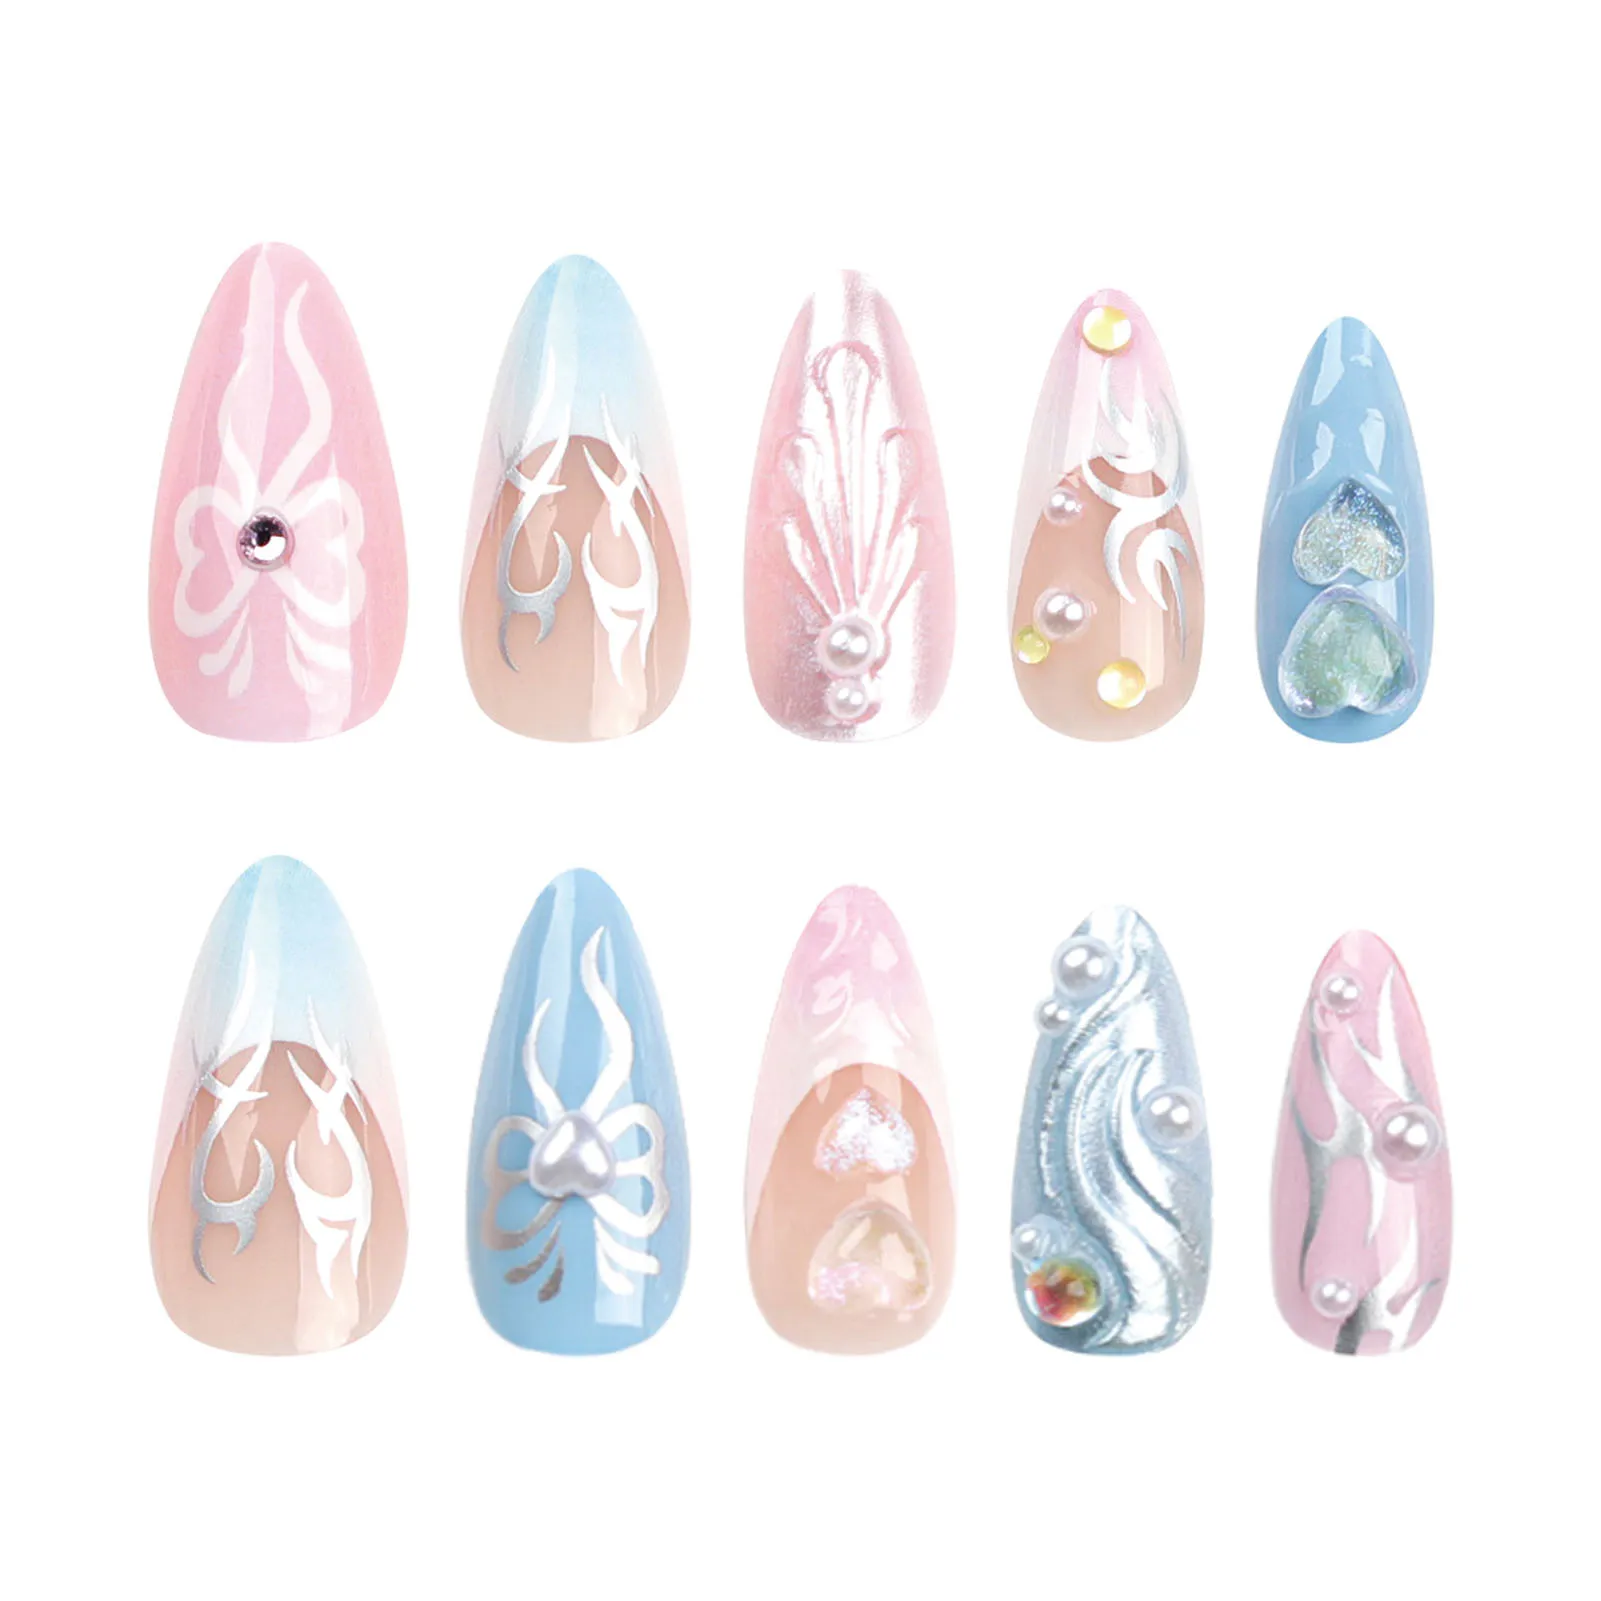 

Женский дизайн ногтей Искусственные ногти для французского маникюра розовый и синий двойной цвет имитация жемчуга ногти советы для начинающих украшения ногтей практика